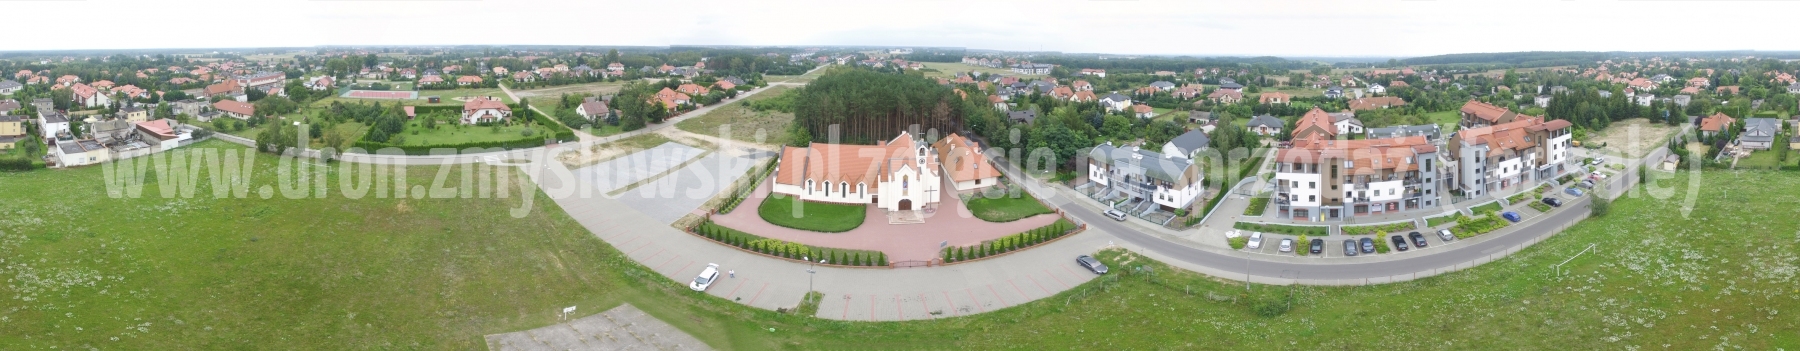 Niemcz - kościół Najświętszej Maryi Panny Wspomożycielki Wiernych w Niemczu z drona - 2016